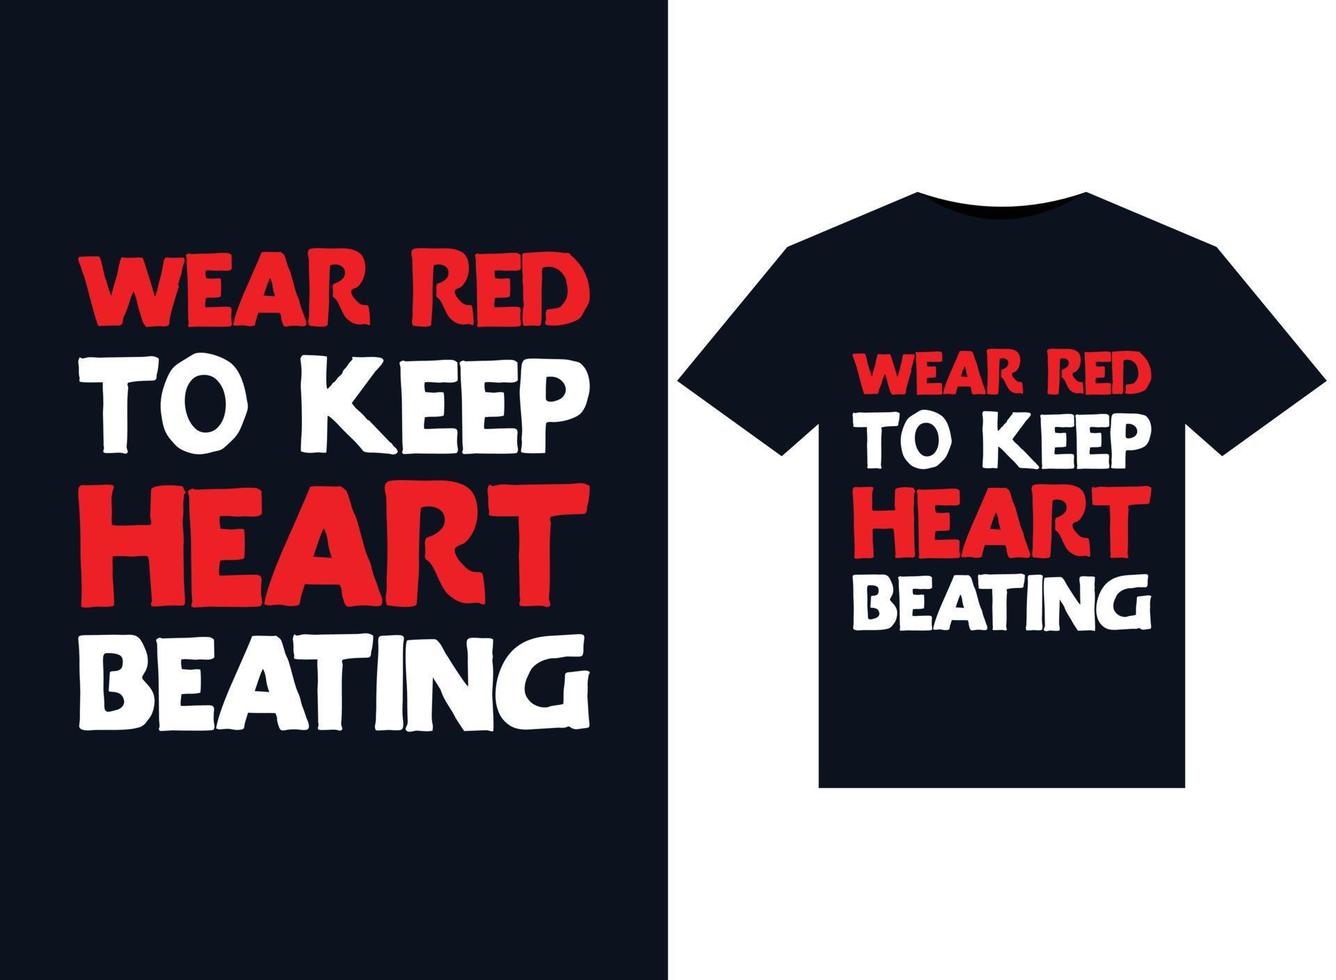 slijtage rood naar houden hart slaan illustraties voor drukklare t-shirts ontwerp vector